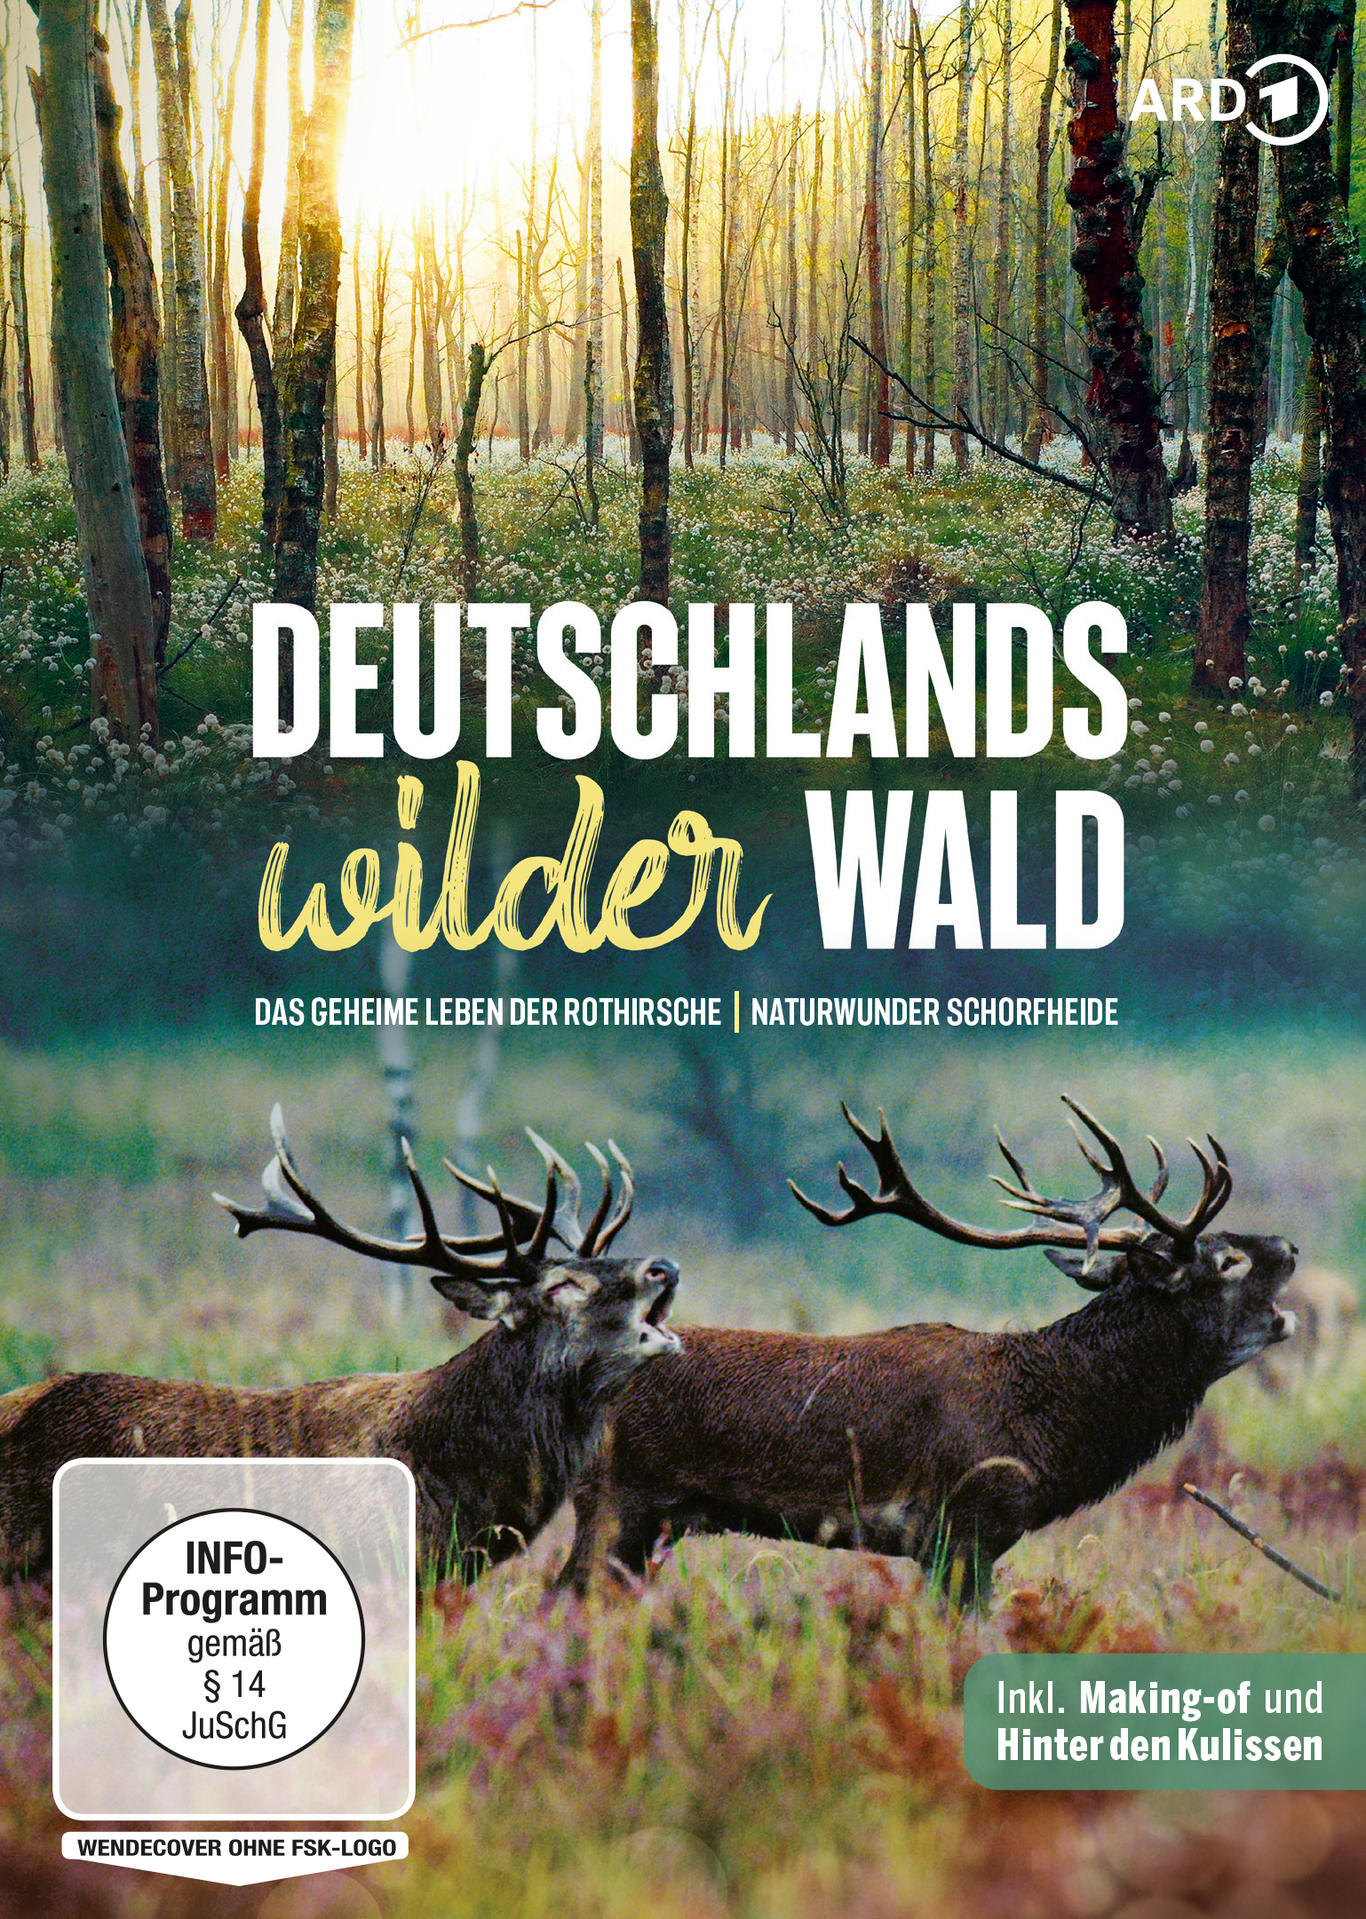 DEUTSCHLANDS - LEBEN WILDER GEHEIME DER DAS WALD DVD R